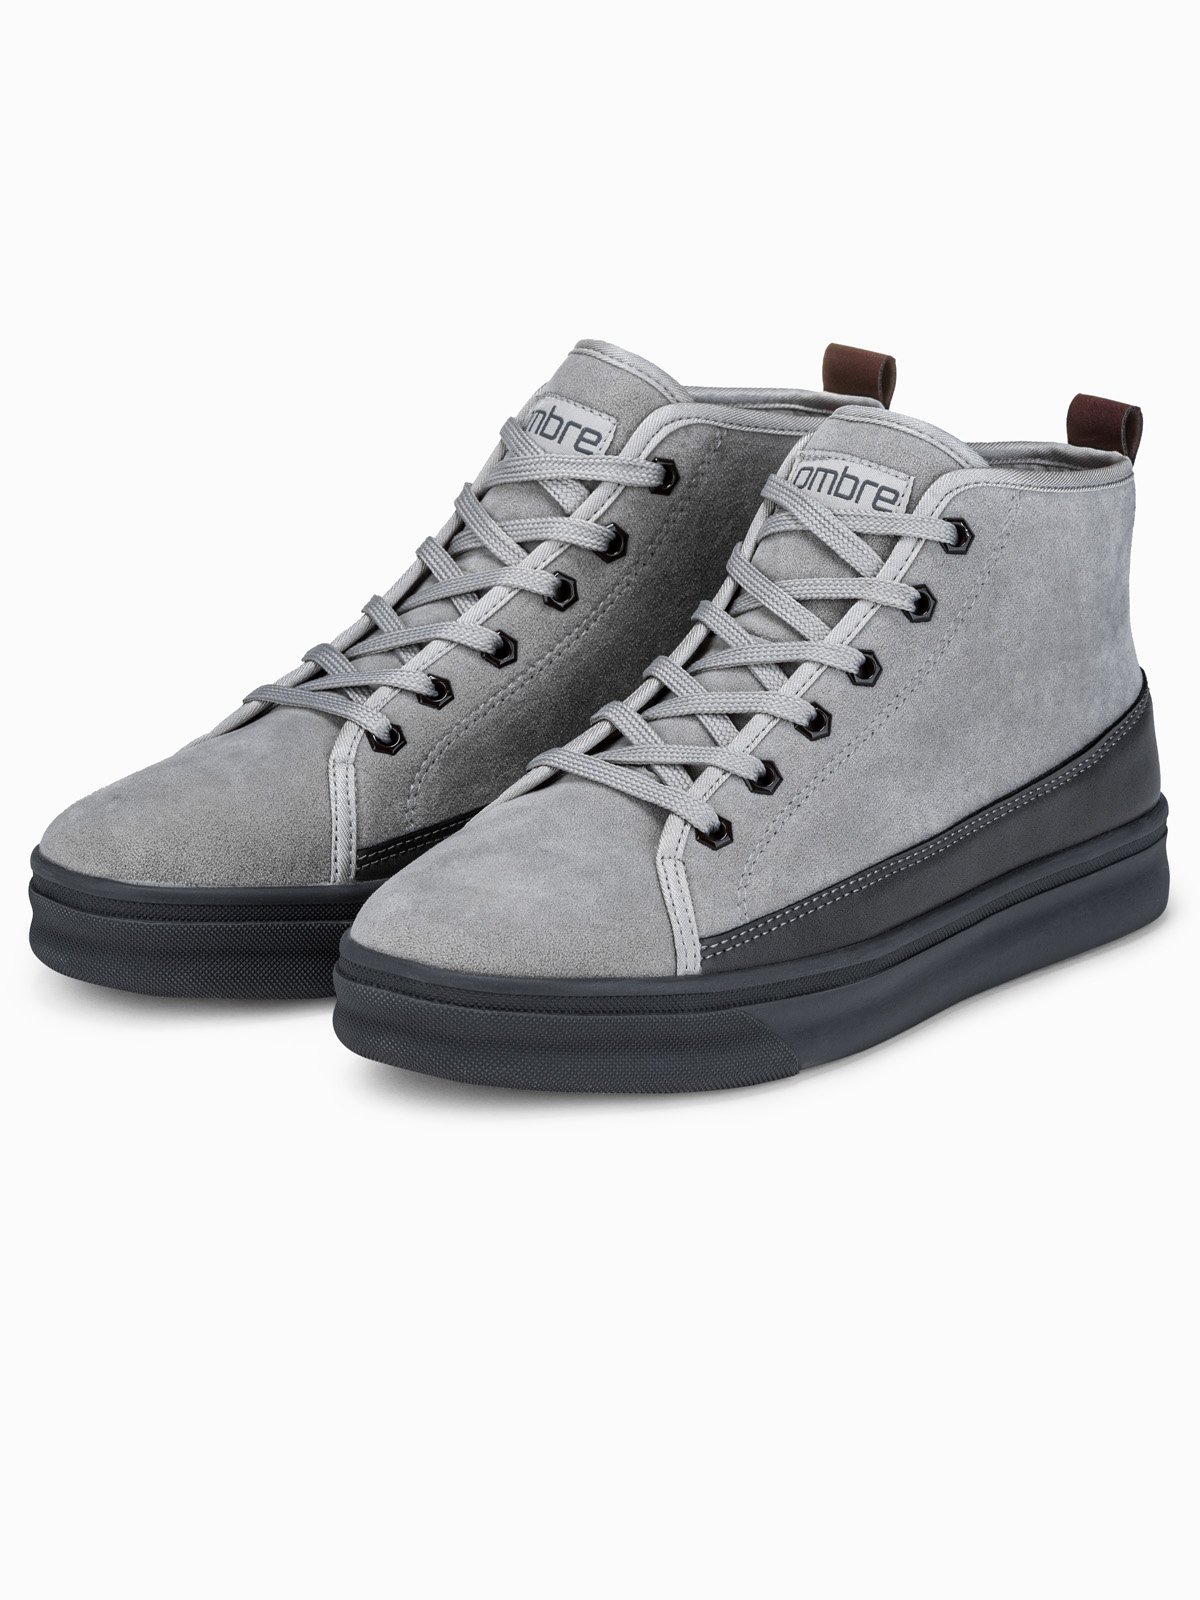 Men's casual sneakers T362 - grey 